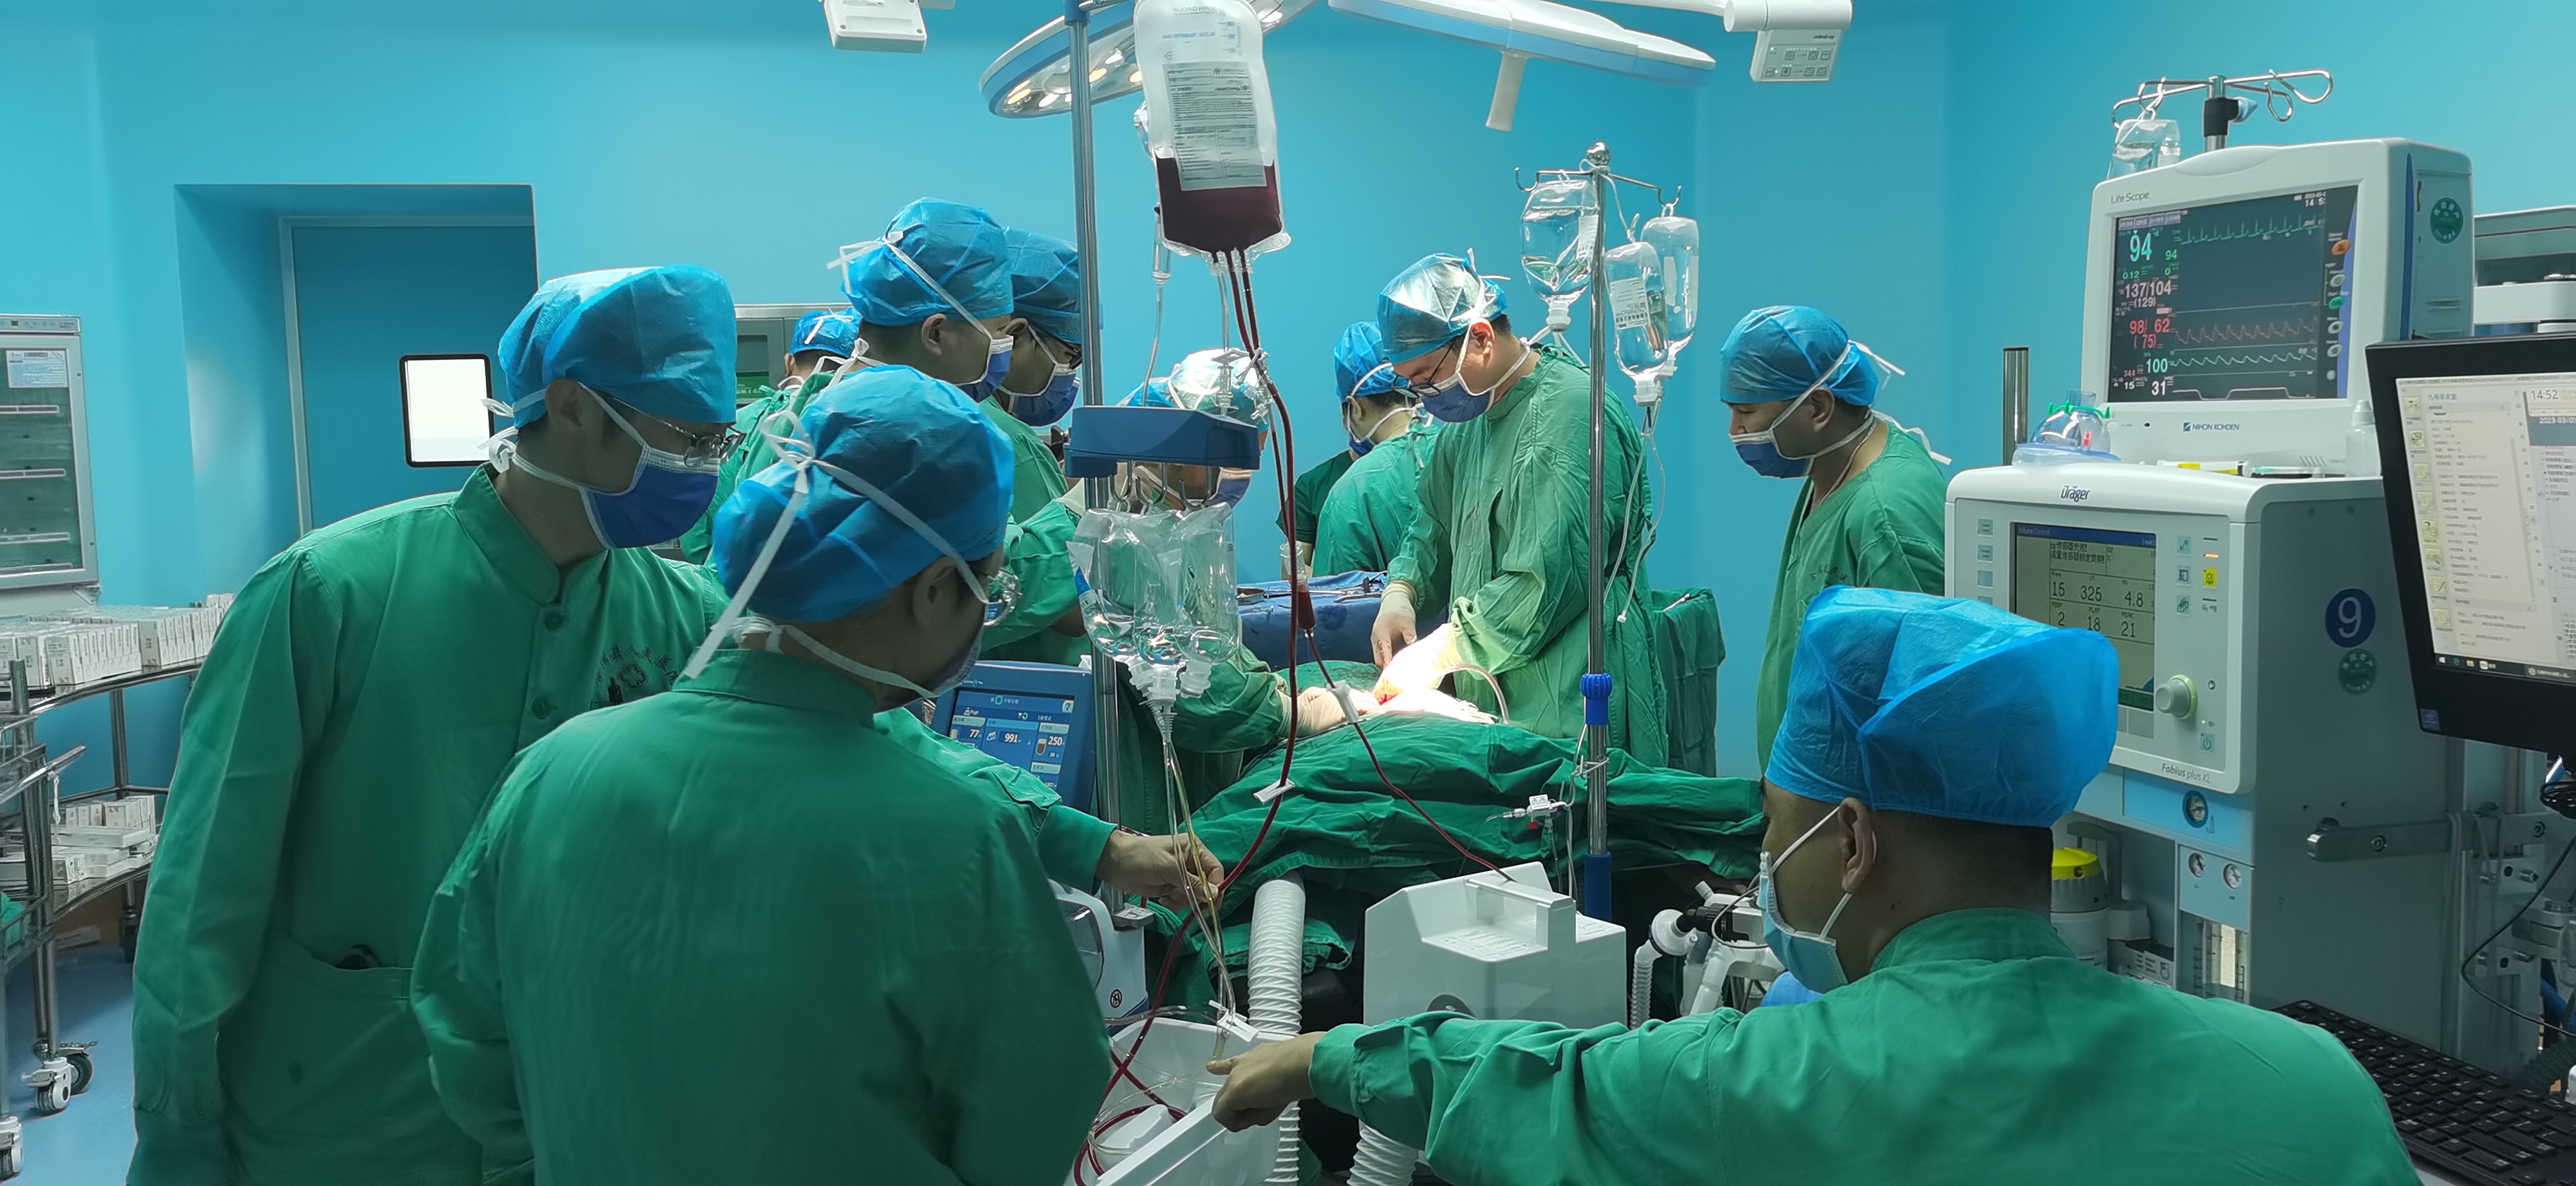 附属儿童医院已开展20例人工耳蜗植入手术-上海交通大学医学院精神文明网